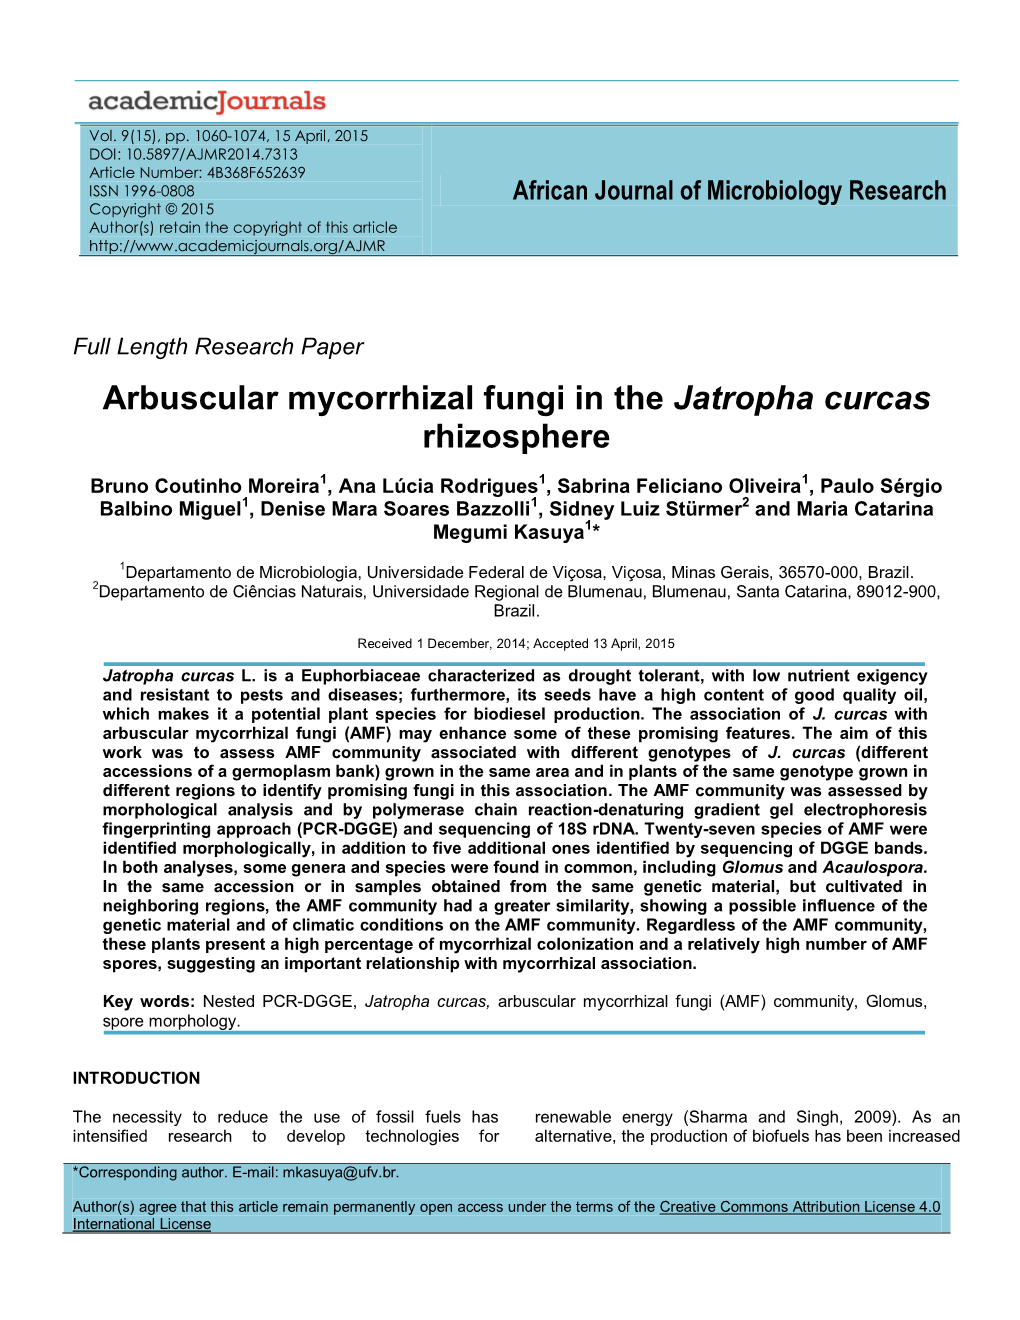 Arbuscular Mycorrhizal Fungi in the Jatropha Curcas Rhizosphere